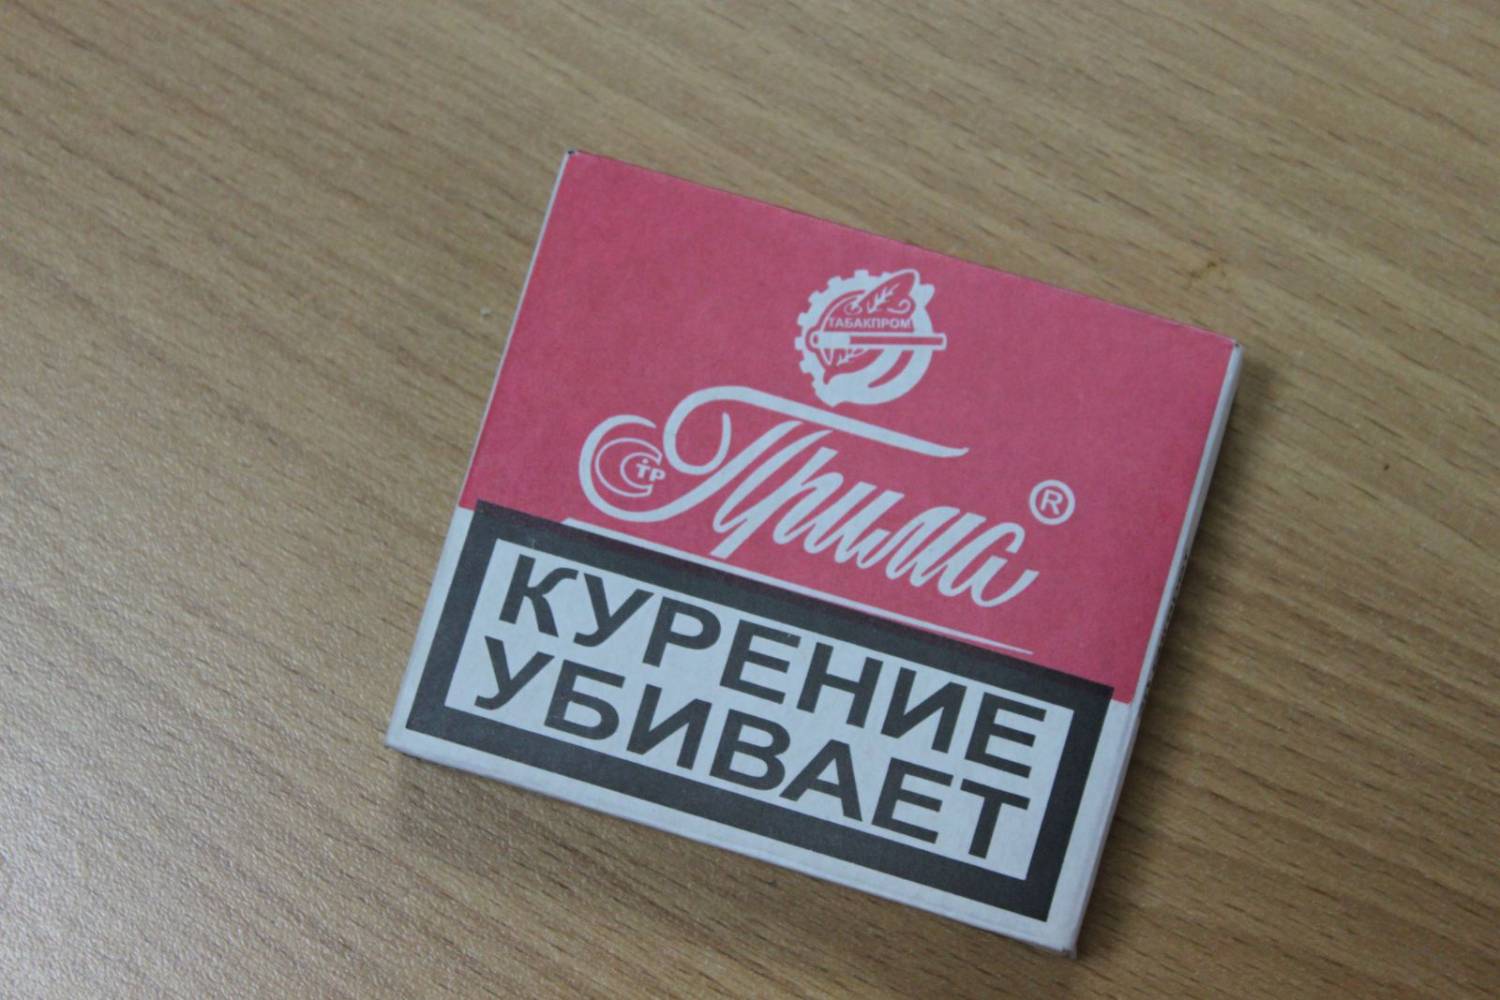 В 2015 году за 150 млн рублей продолжится модернизация компании «Усмань-табак»